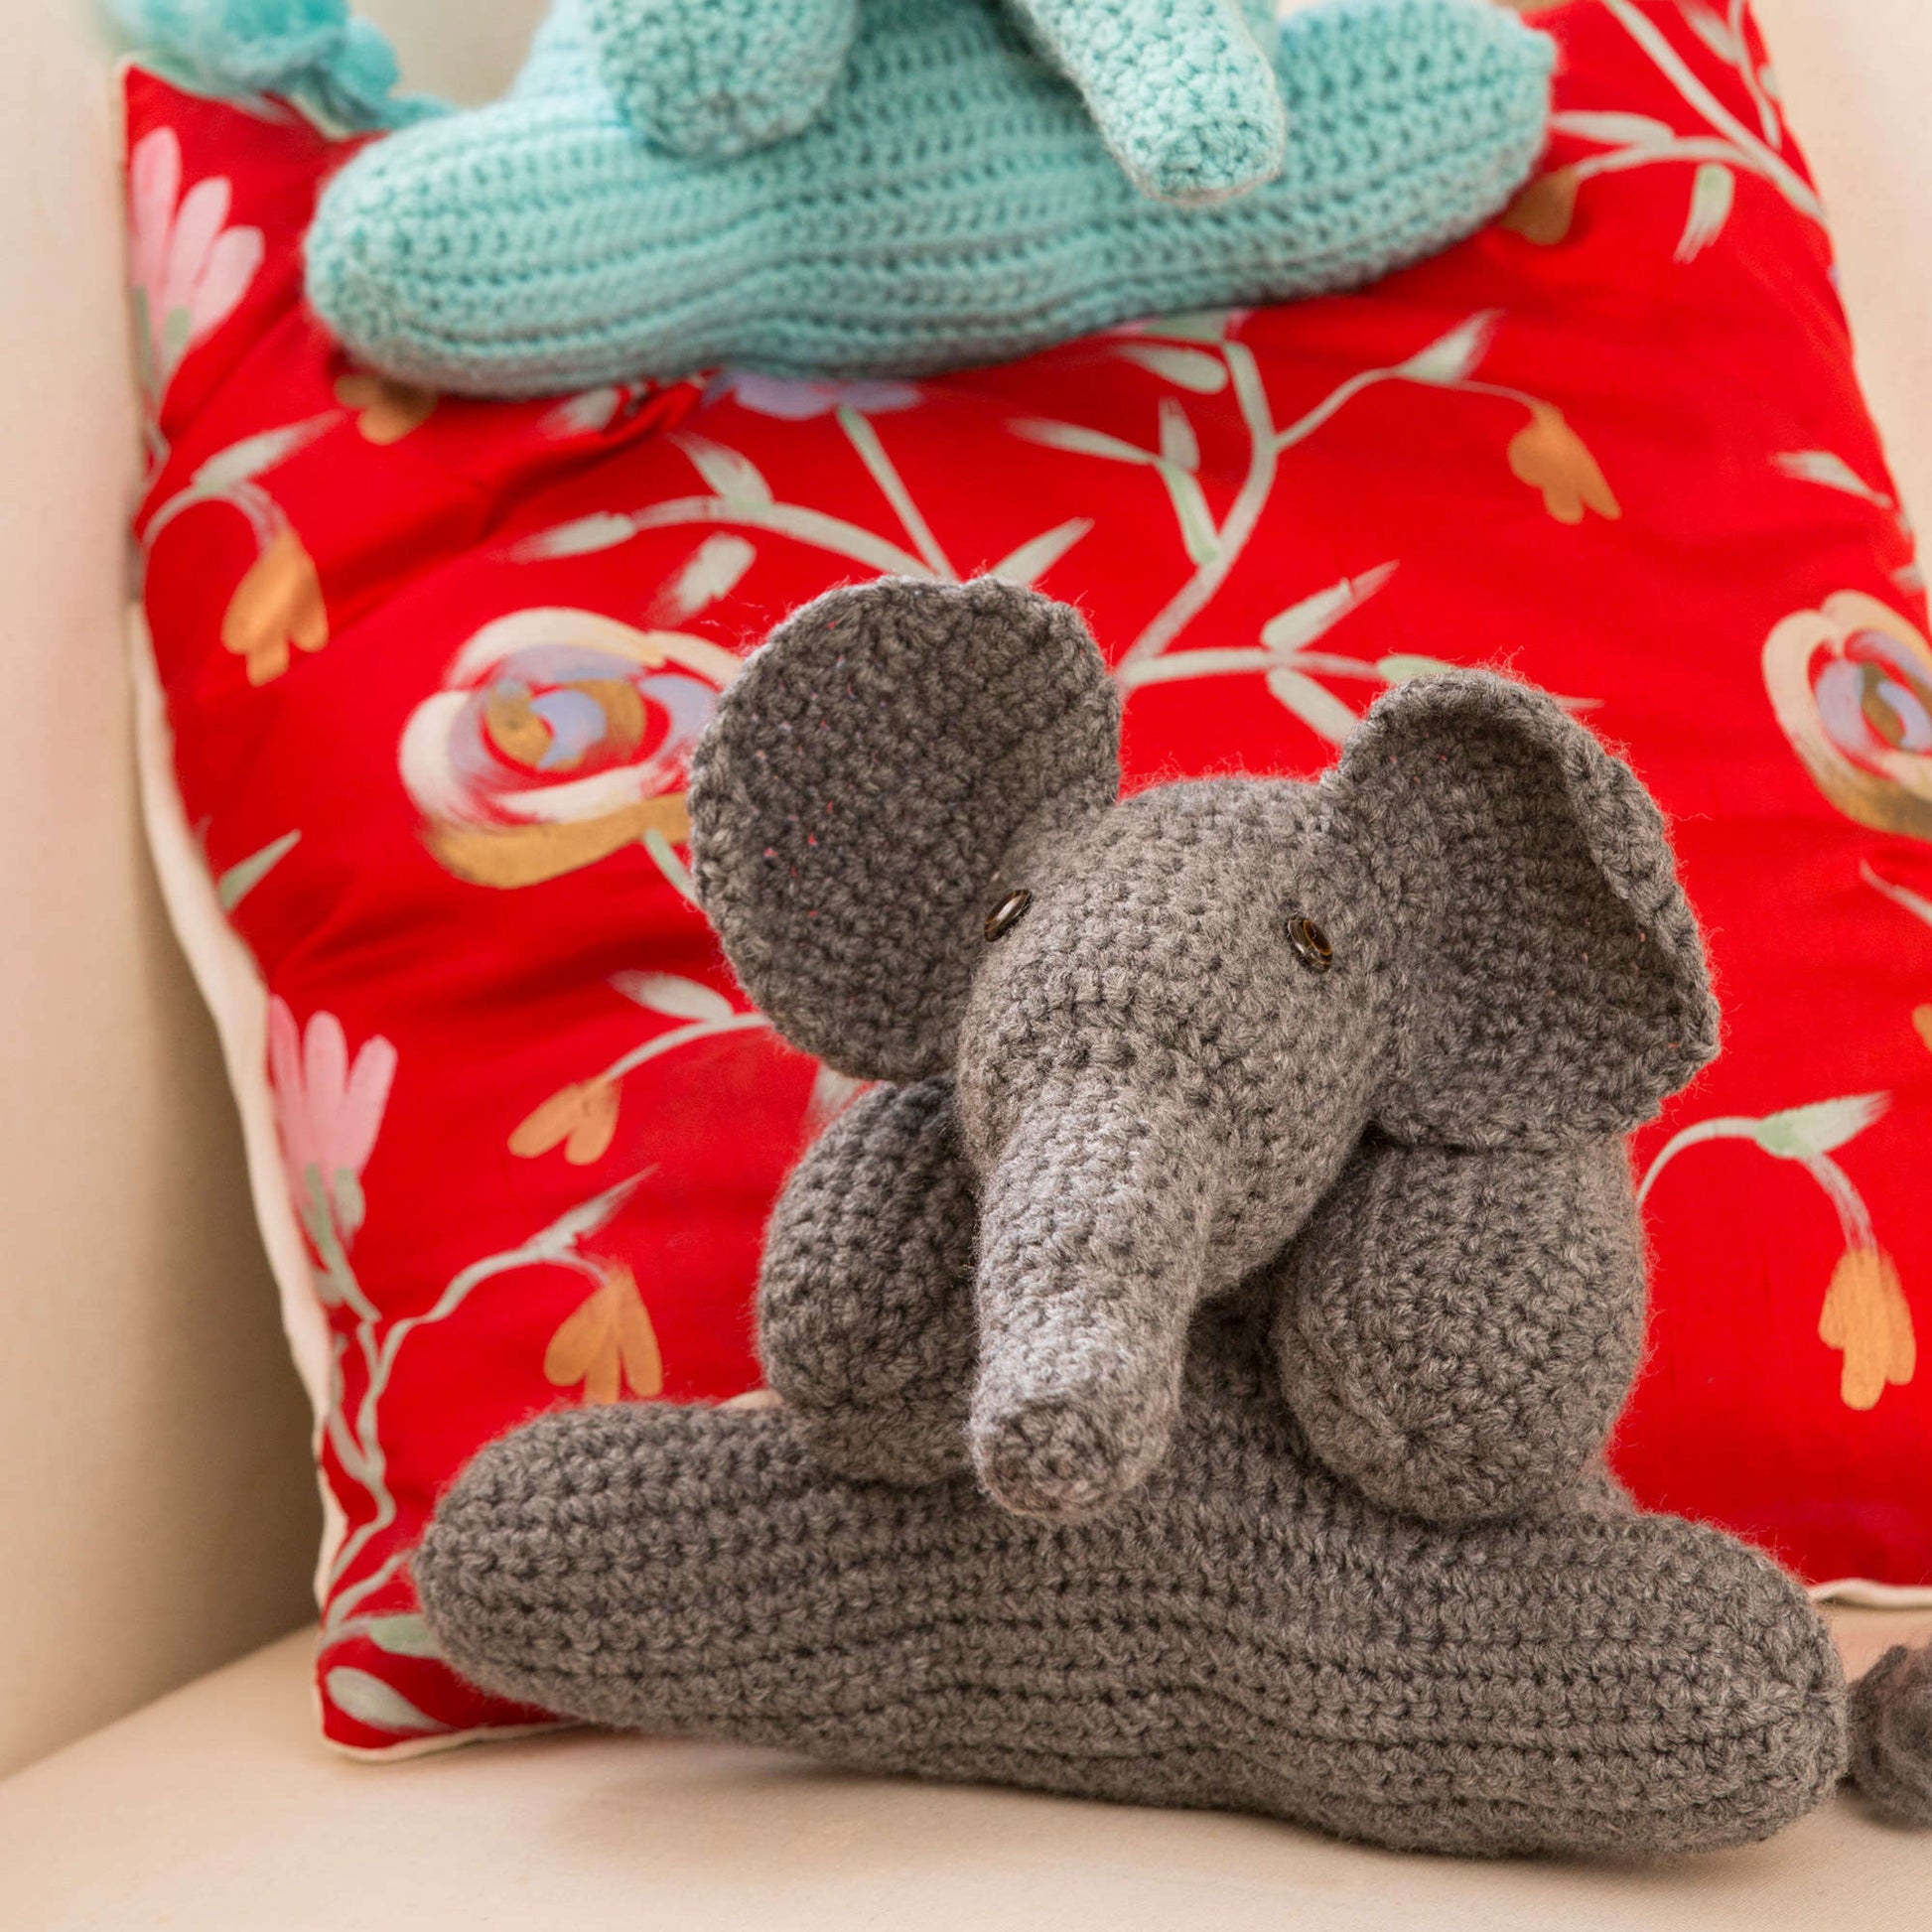 Free Red Heart Crochet Elephant Friends Pattern